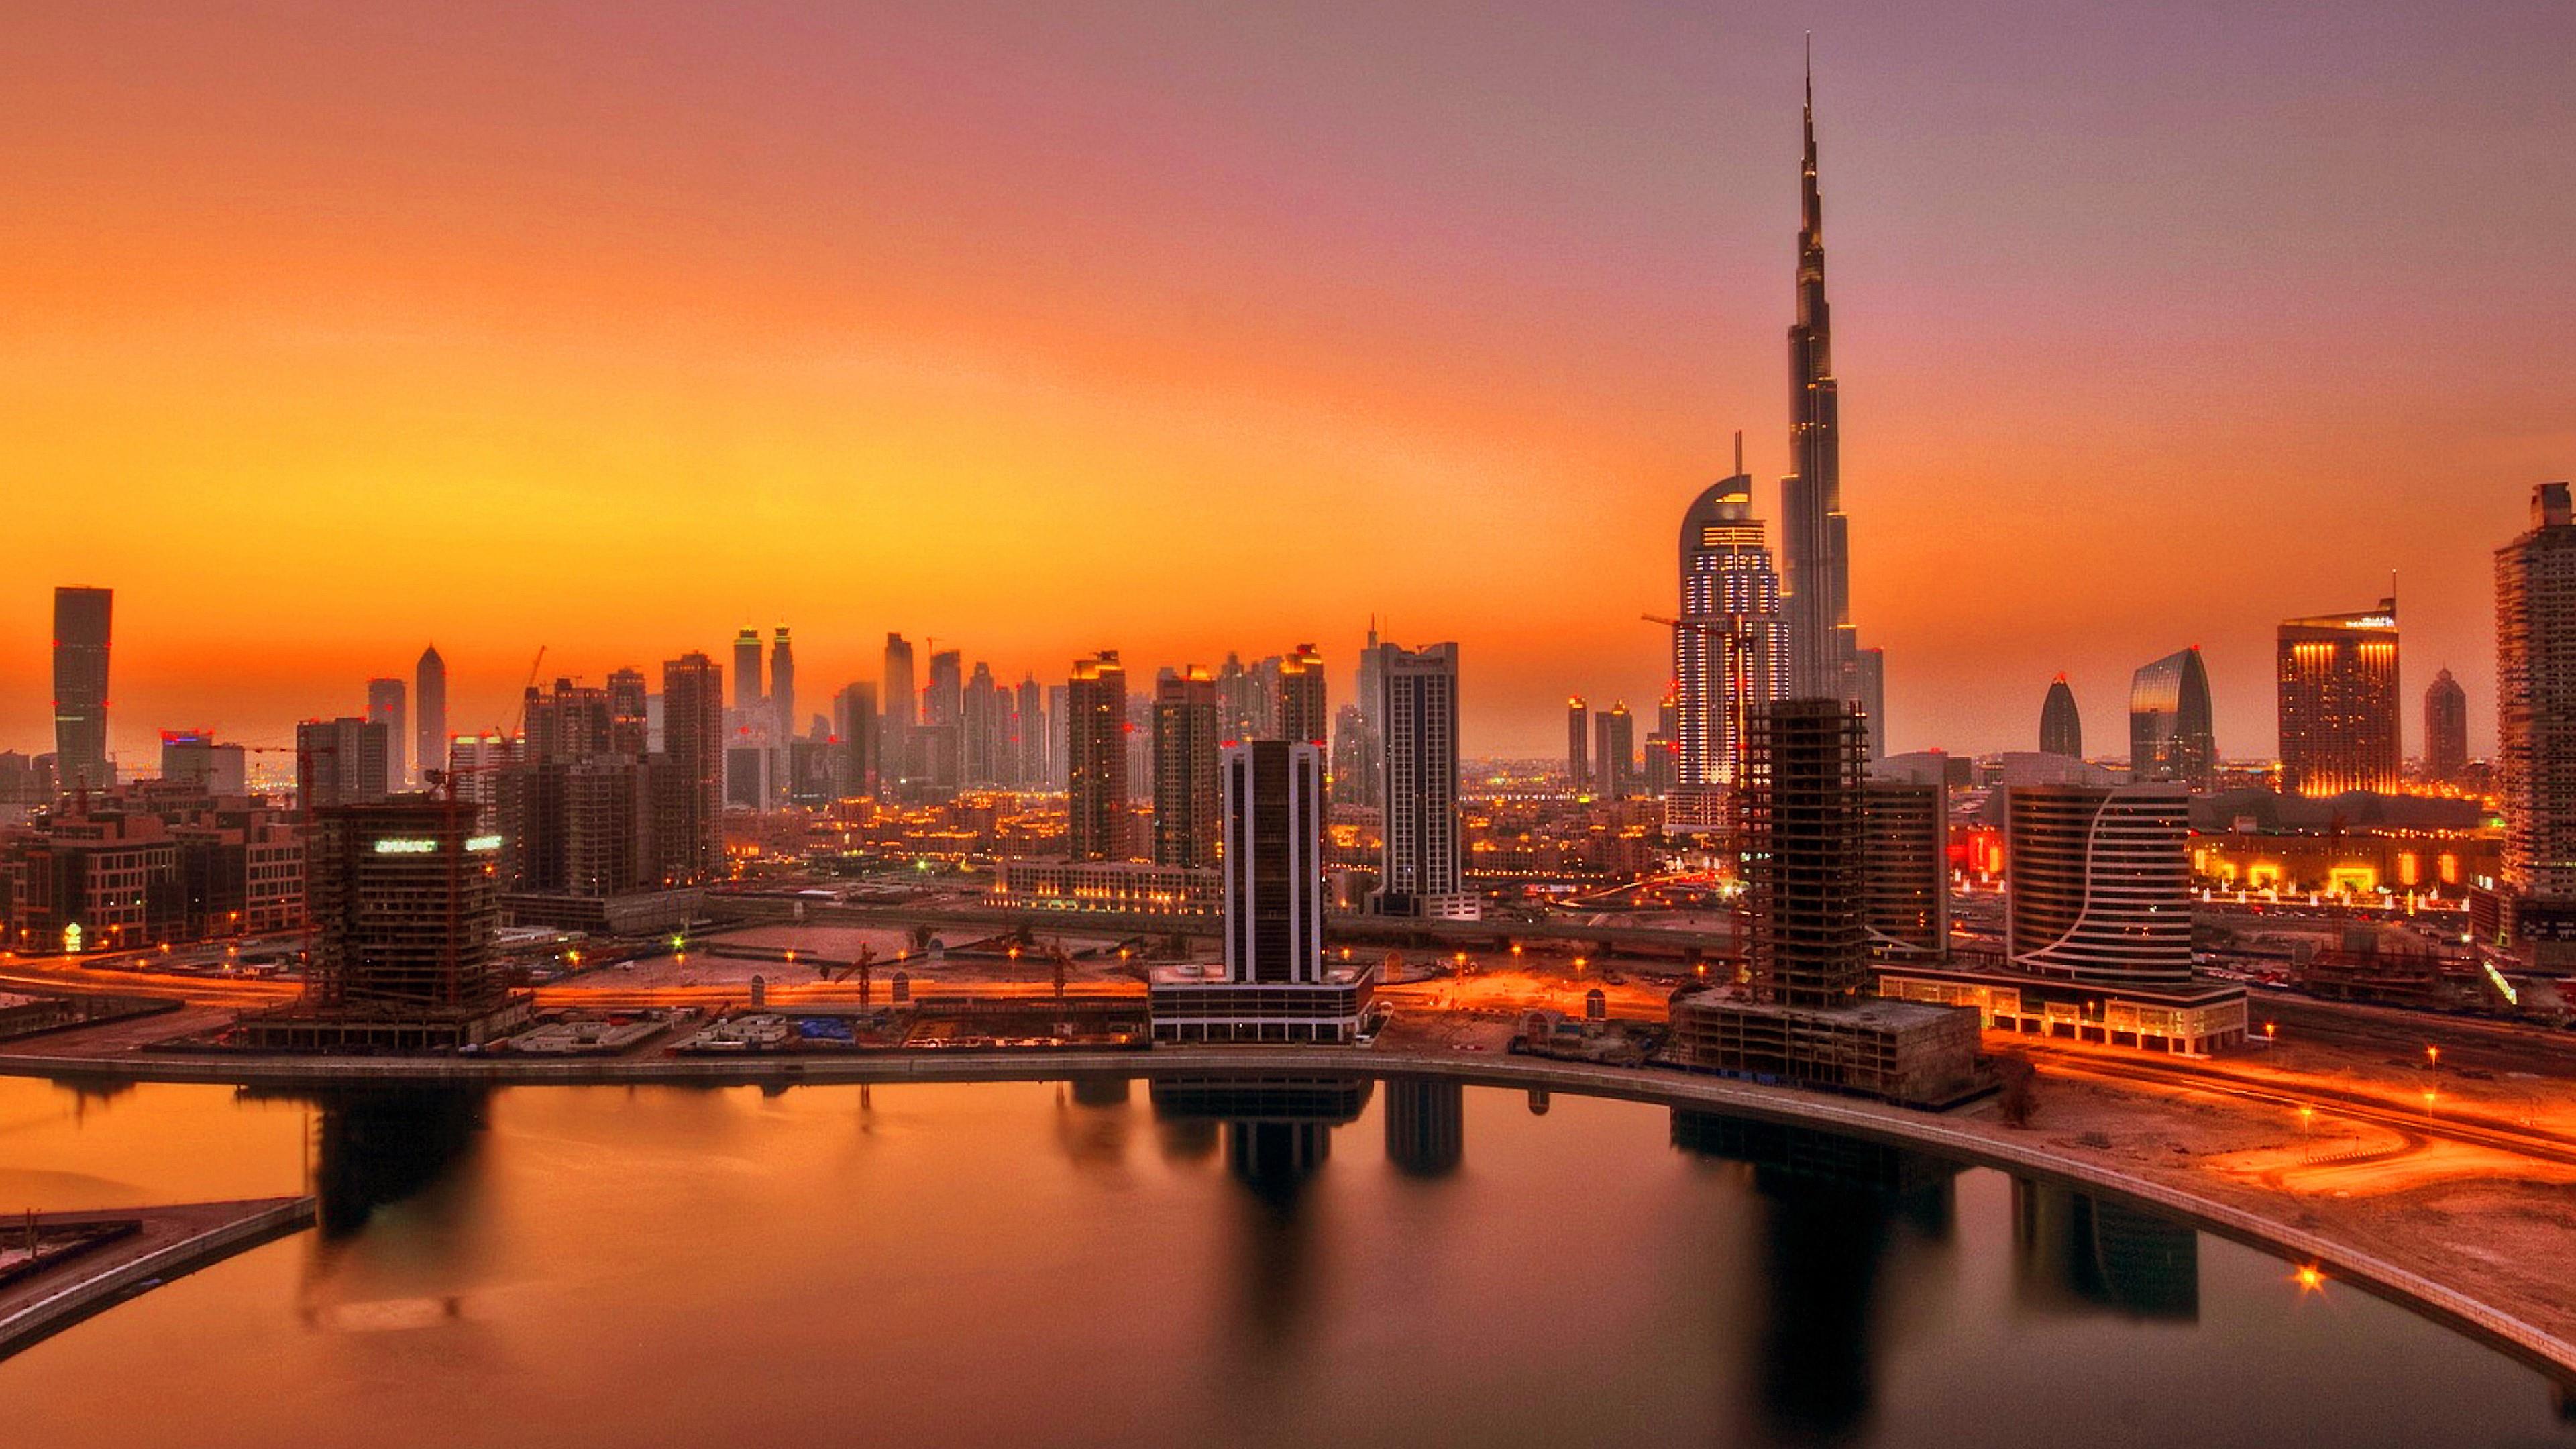 Uae Dubai Skyscrapers In Sunset .wallpapertip.com